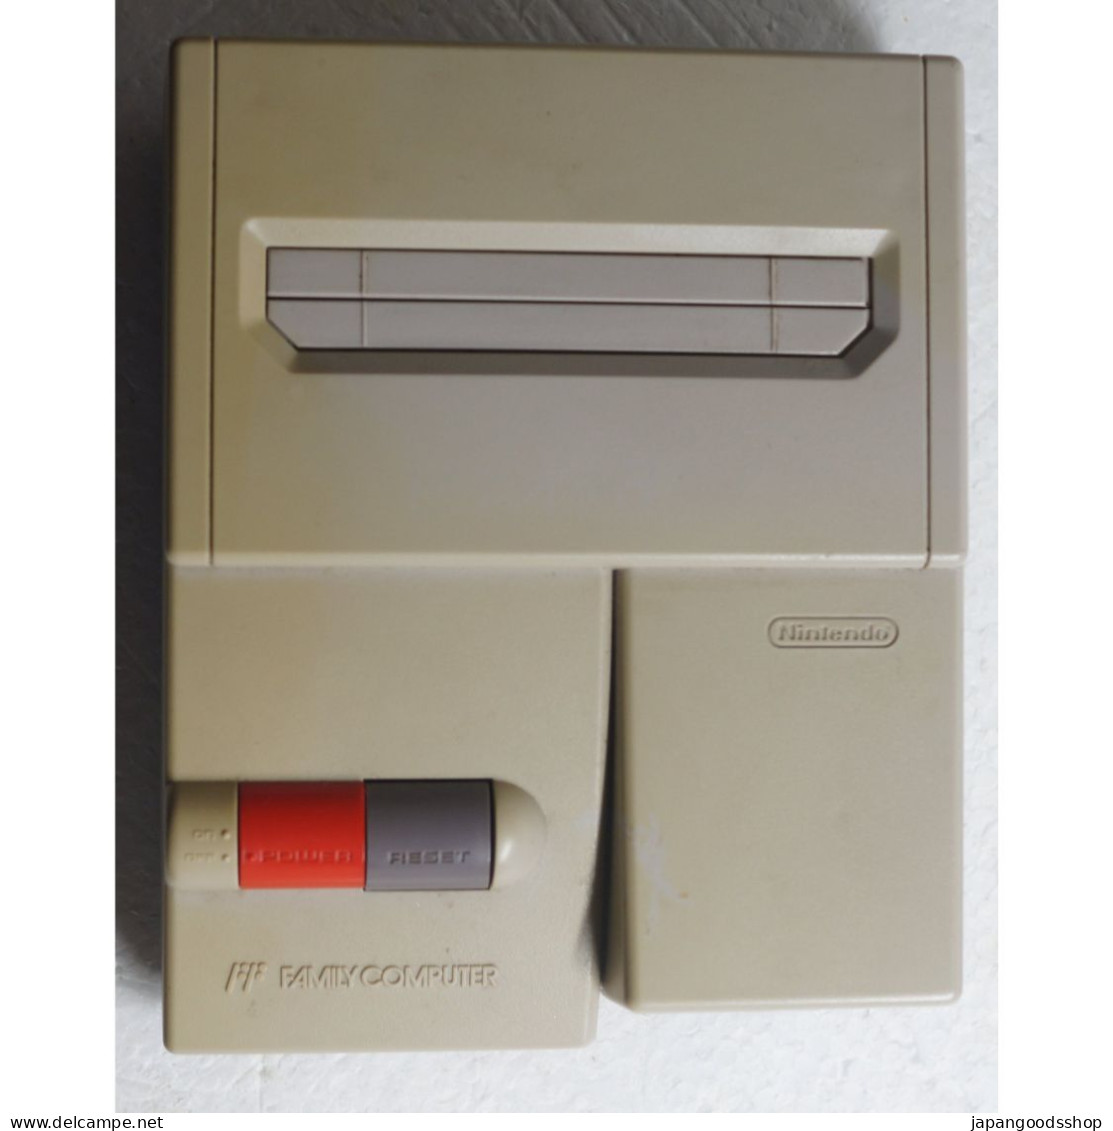 New Famicom HVC-101 - Famicom